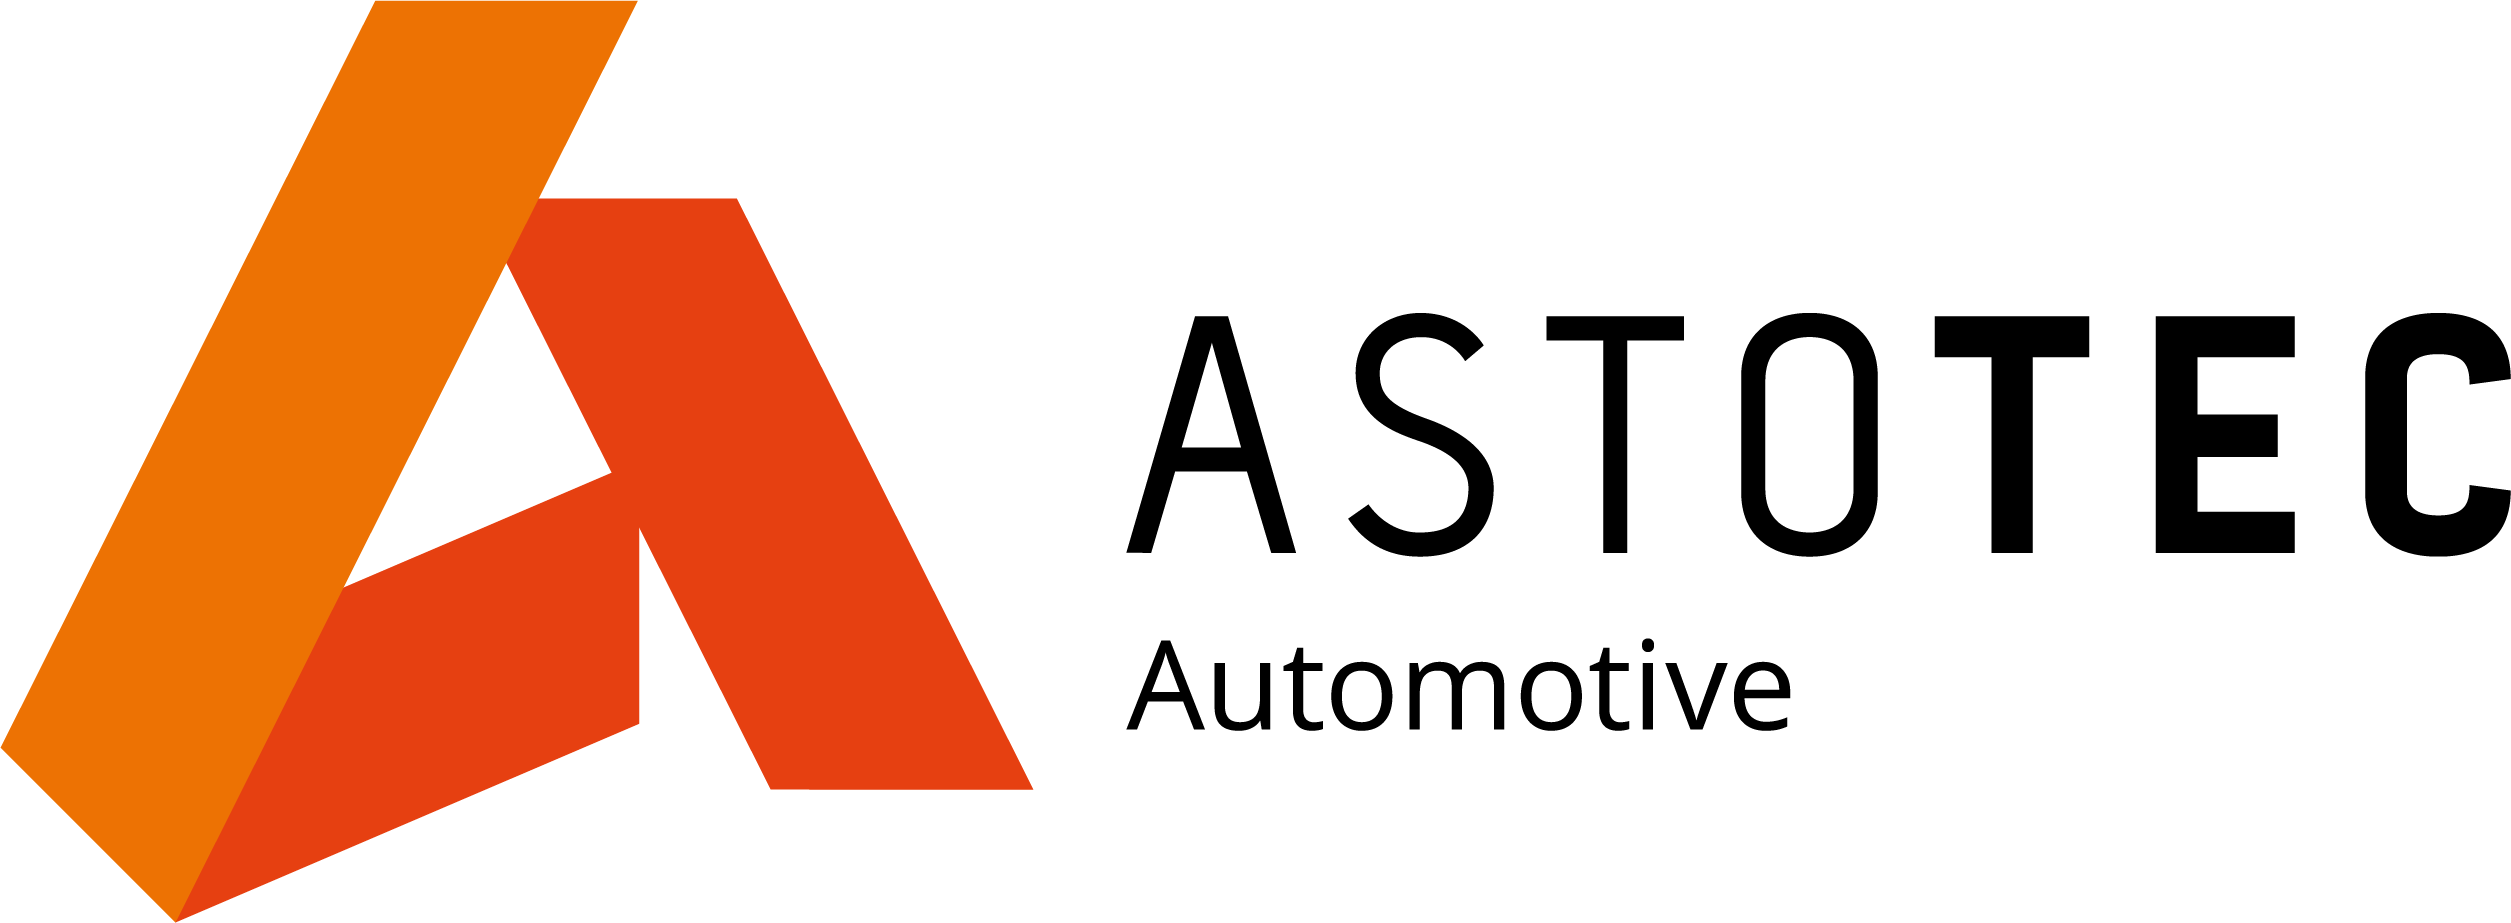 Astotec Automotive Czech Republic s.r.o.